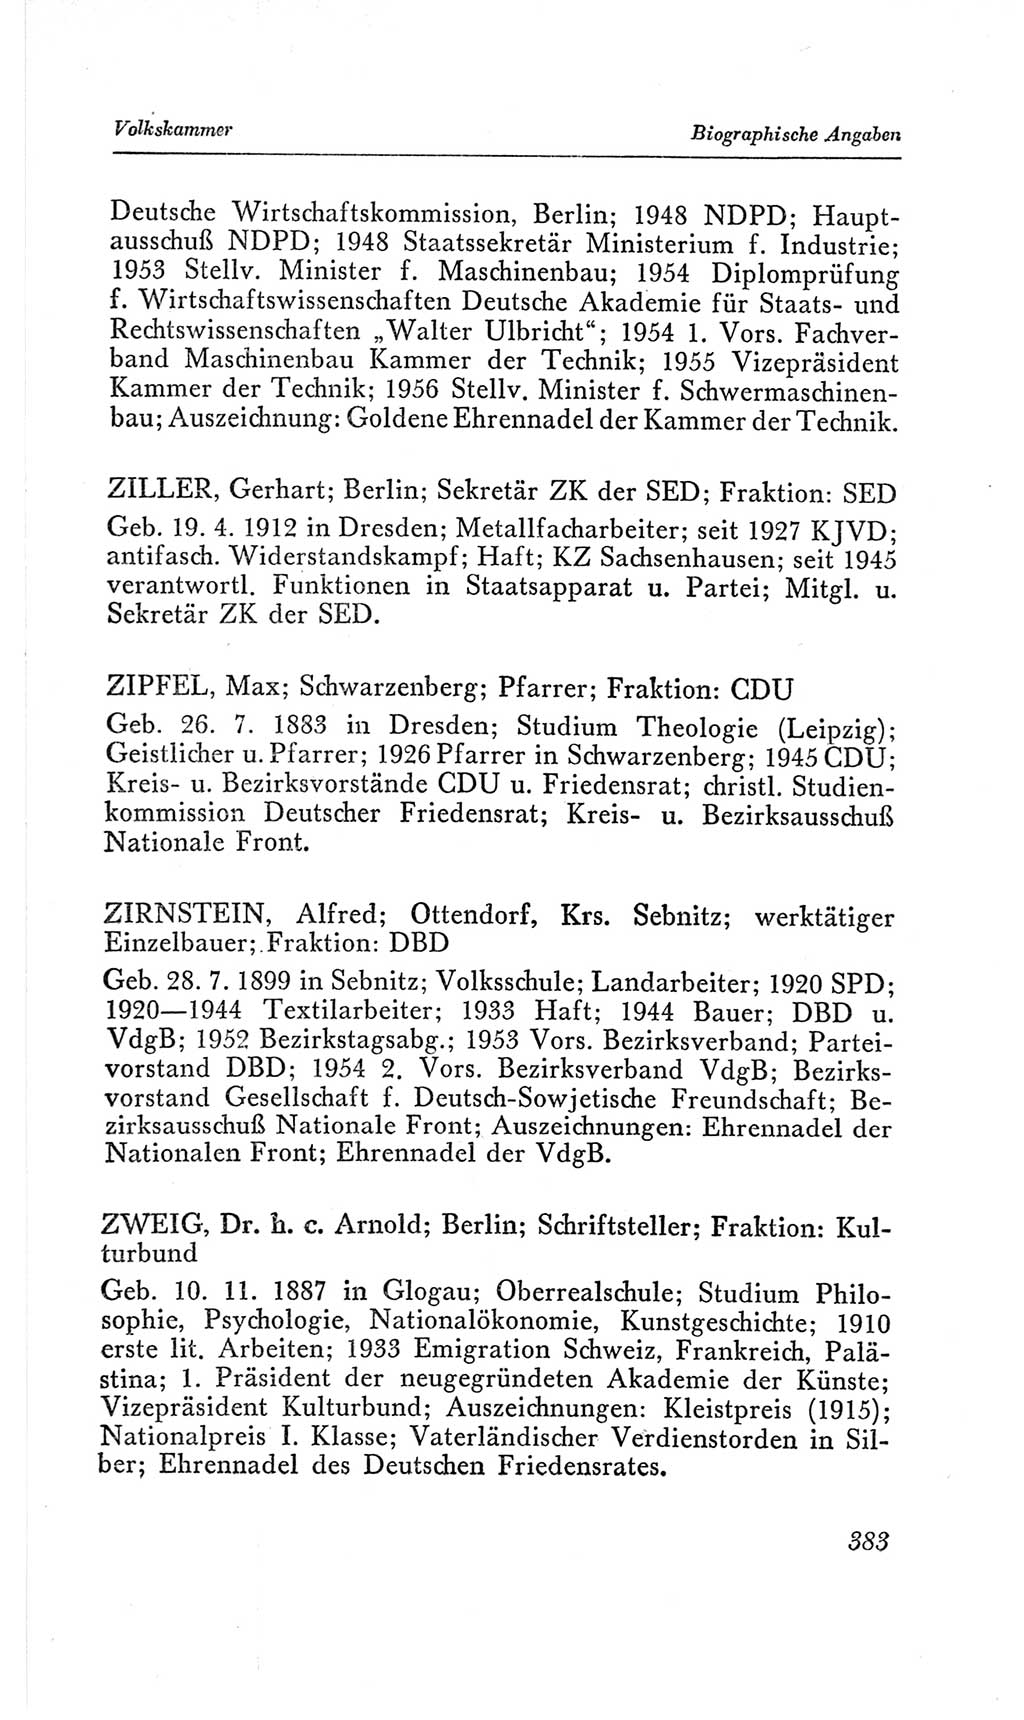 Handbuch der Volkskammer (VK) der Deutschen Demokratischen Republik (DDR), 2. Wahlperiode 1954-1958, Seite 383 (Hdb. VK. DDR, 2. WP. 1954-1958, S. 383)